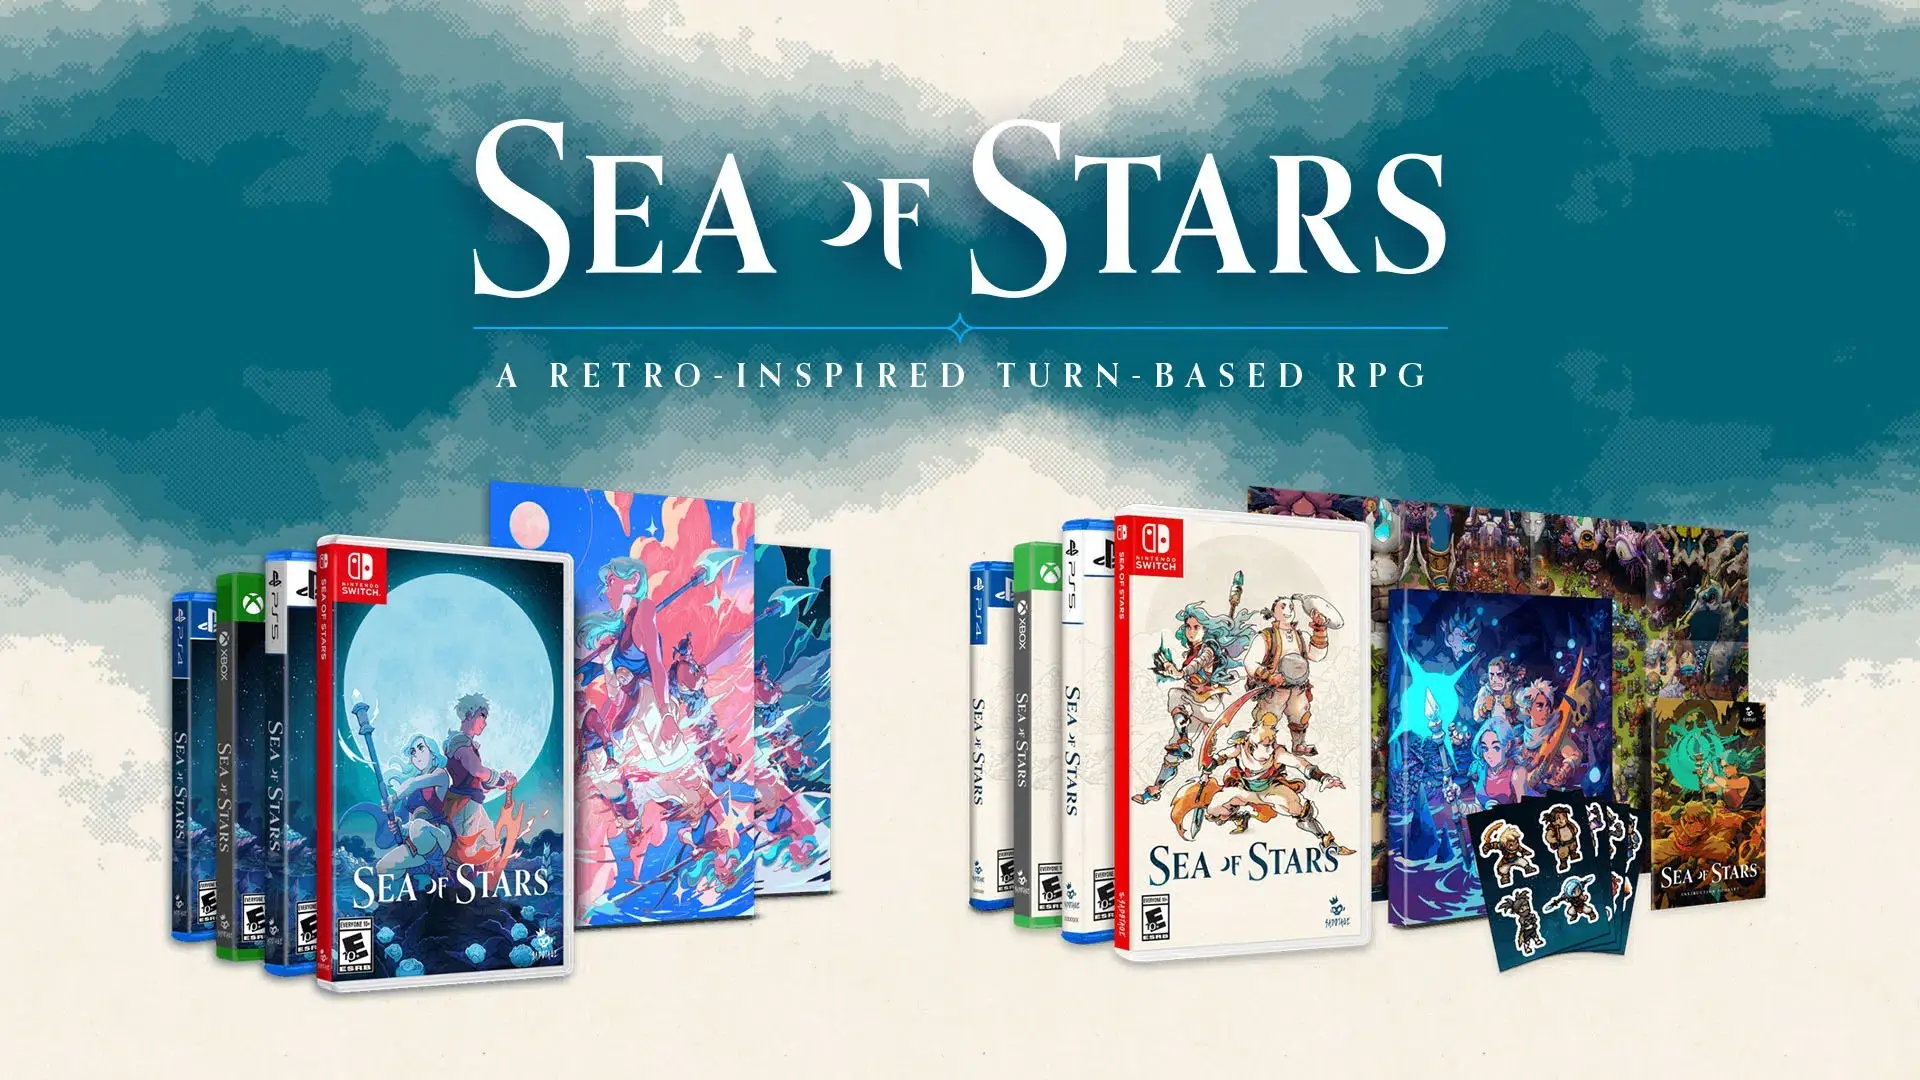 Sea of Stars confirma precio y fecha de su lanzamiento en formato físico  para Switch, Xbox Series, PS4 y PS5 - Videojuerguistas